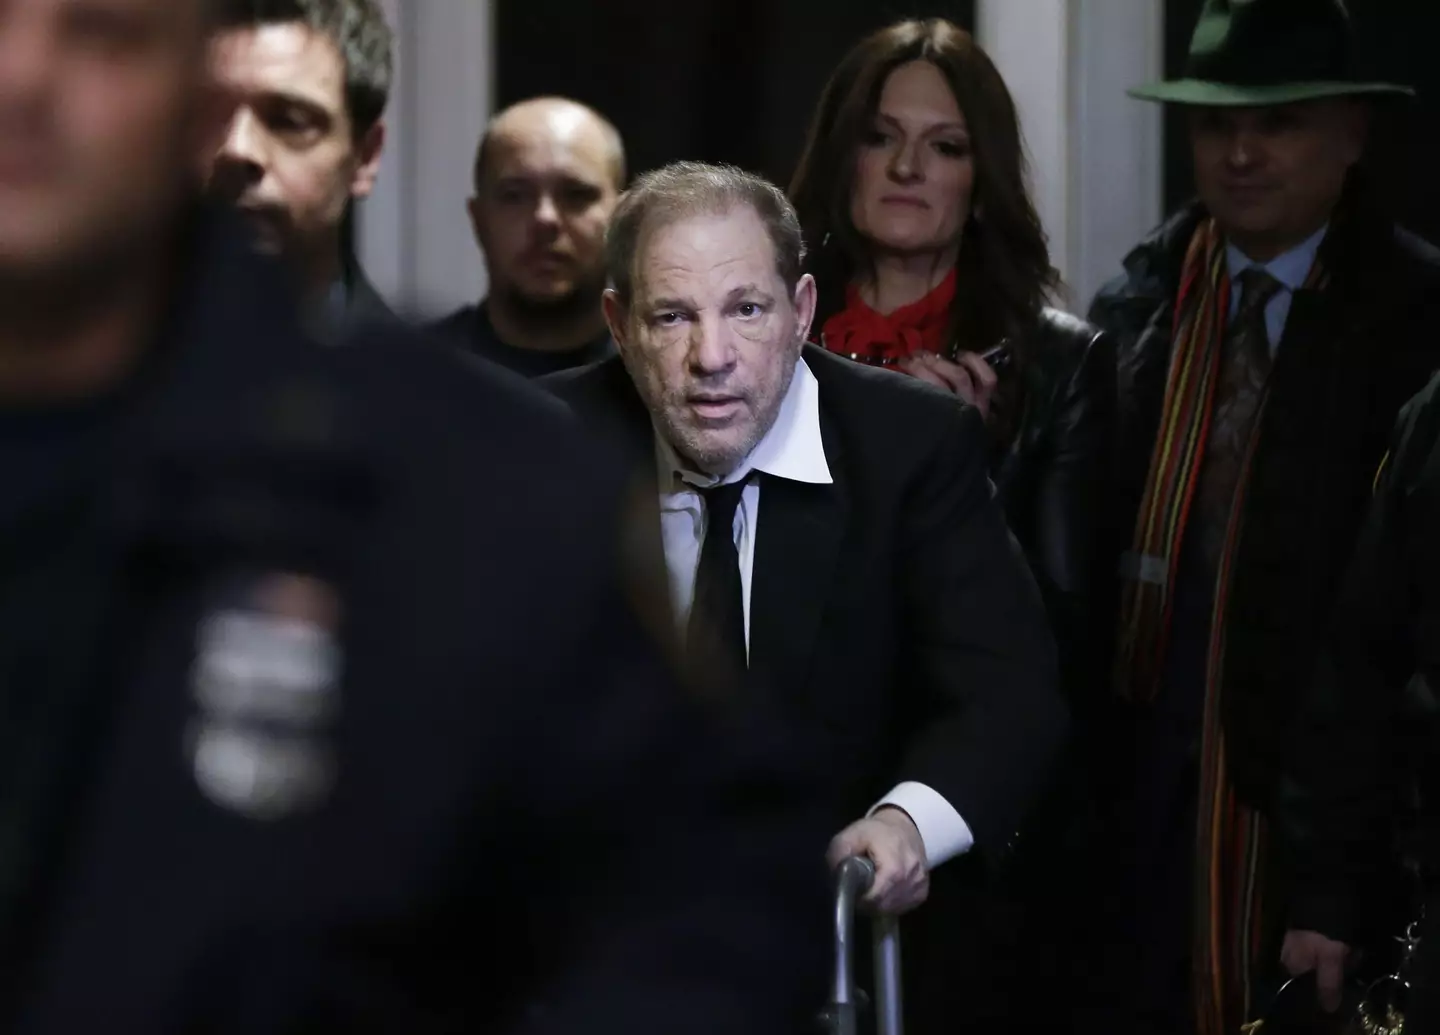 American film producer Harvey Weinstein exits a Manhattan Court in 2020.